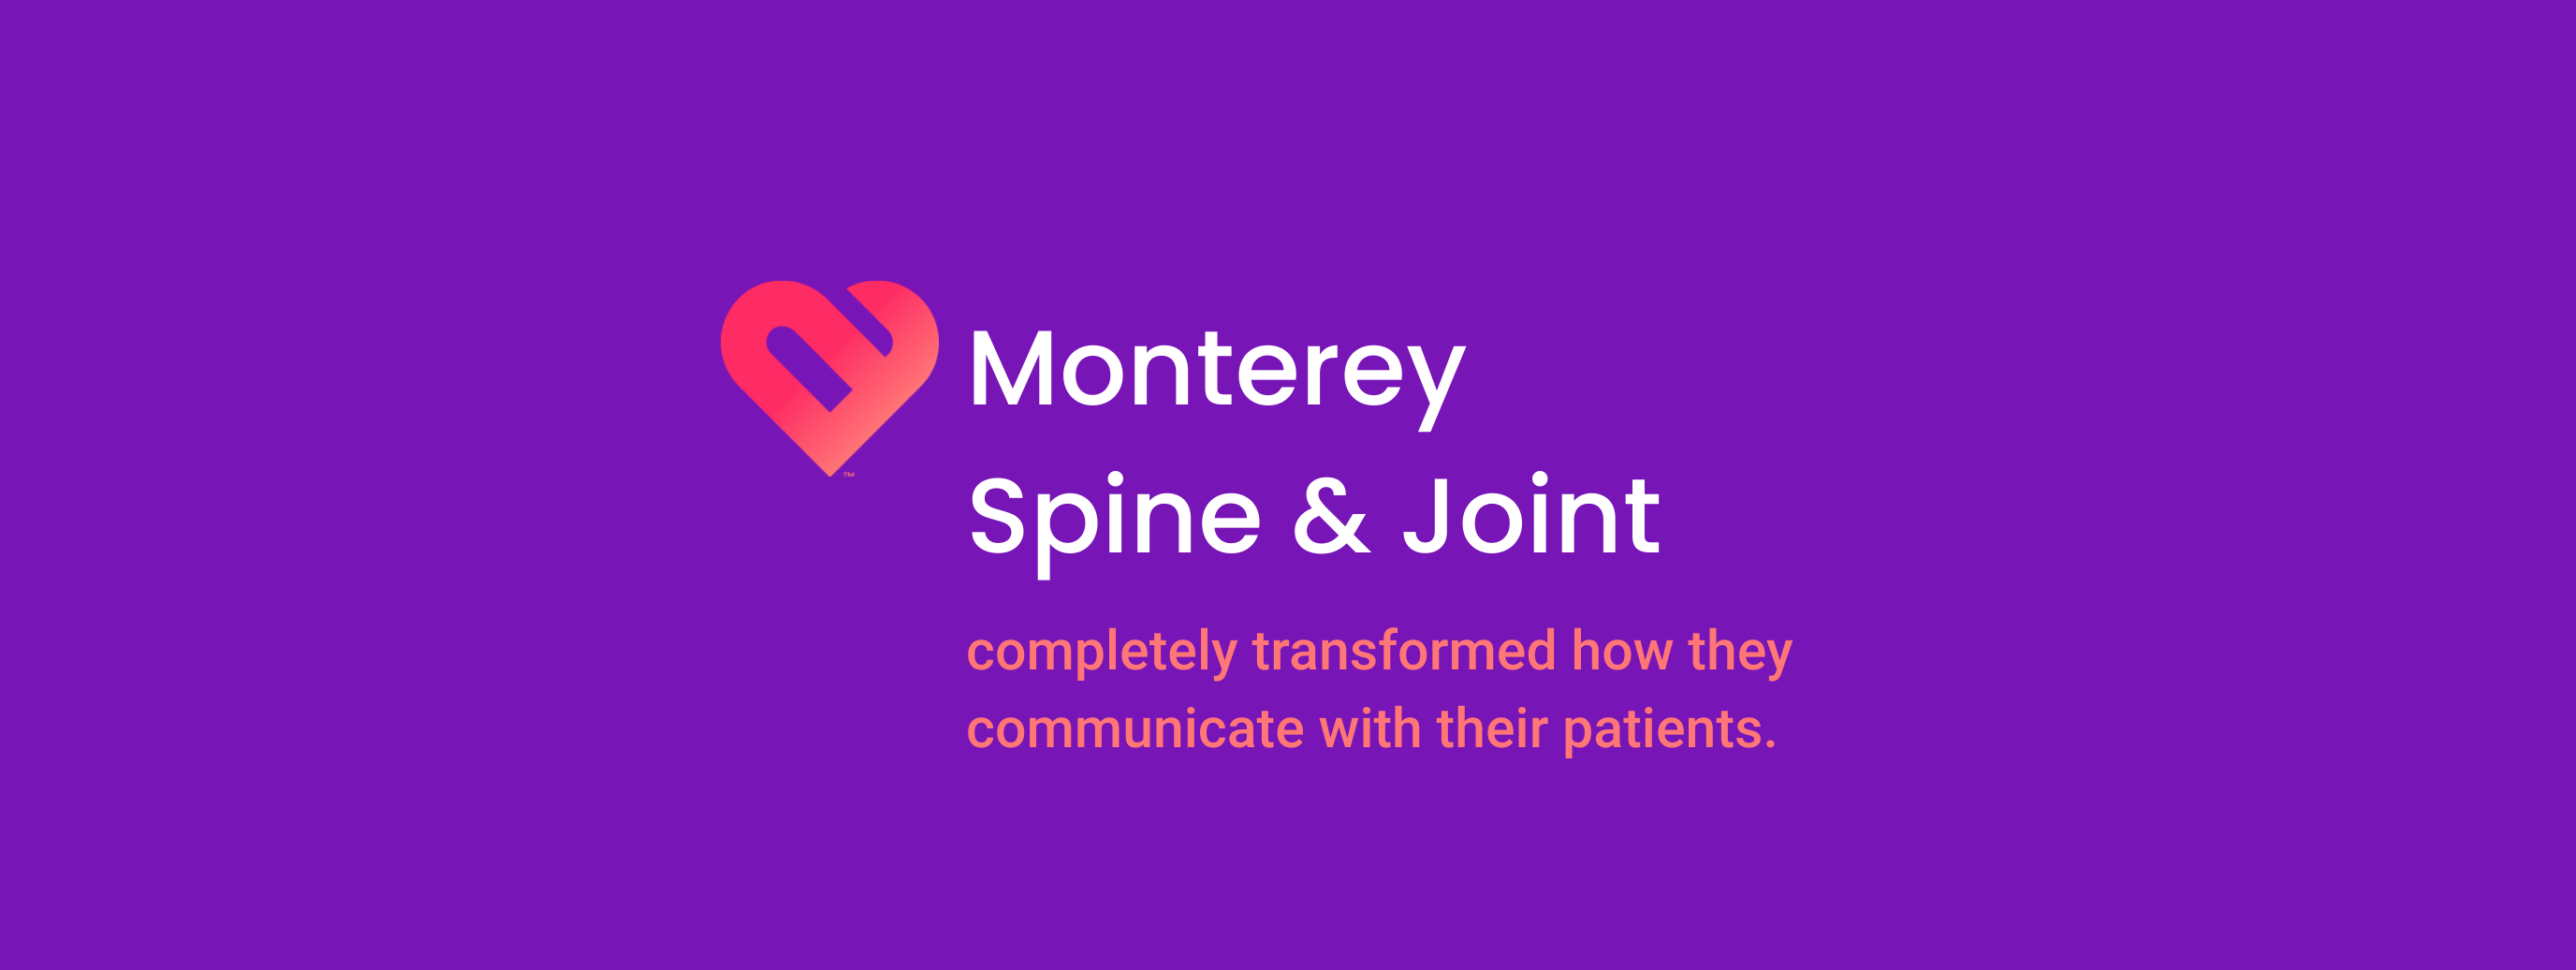 Monterey Spine & Joint header